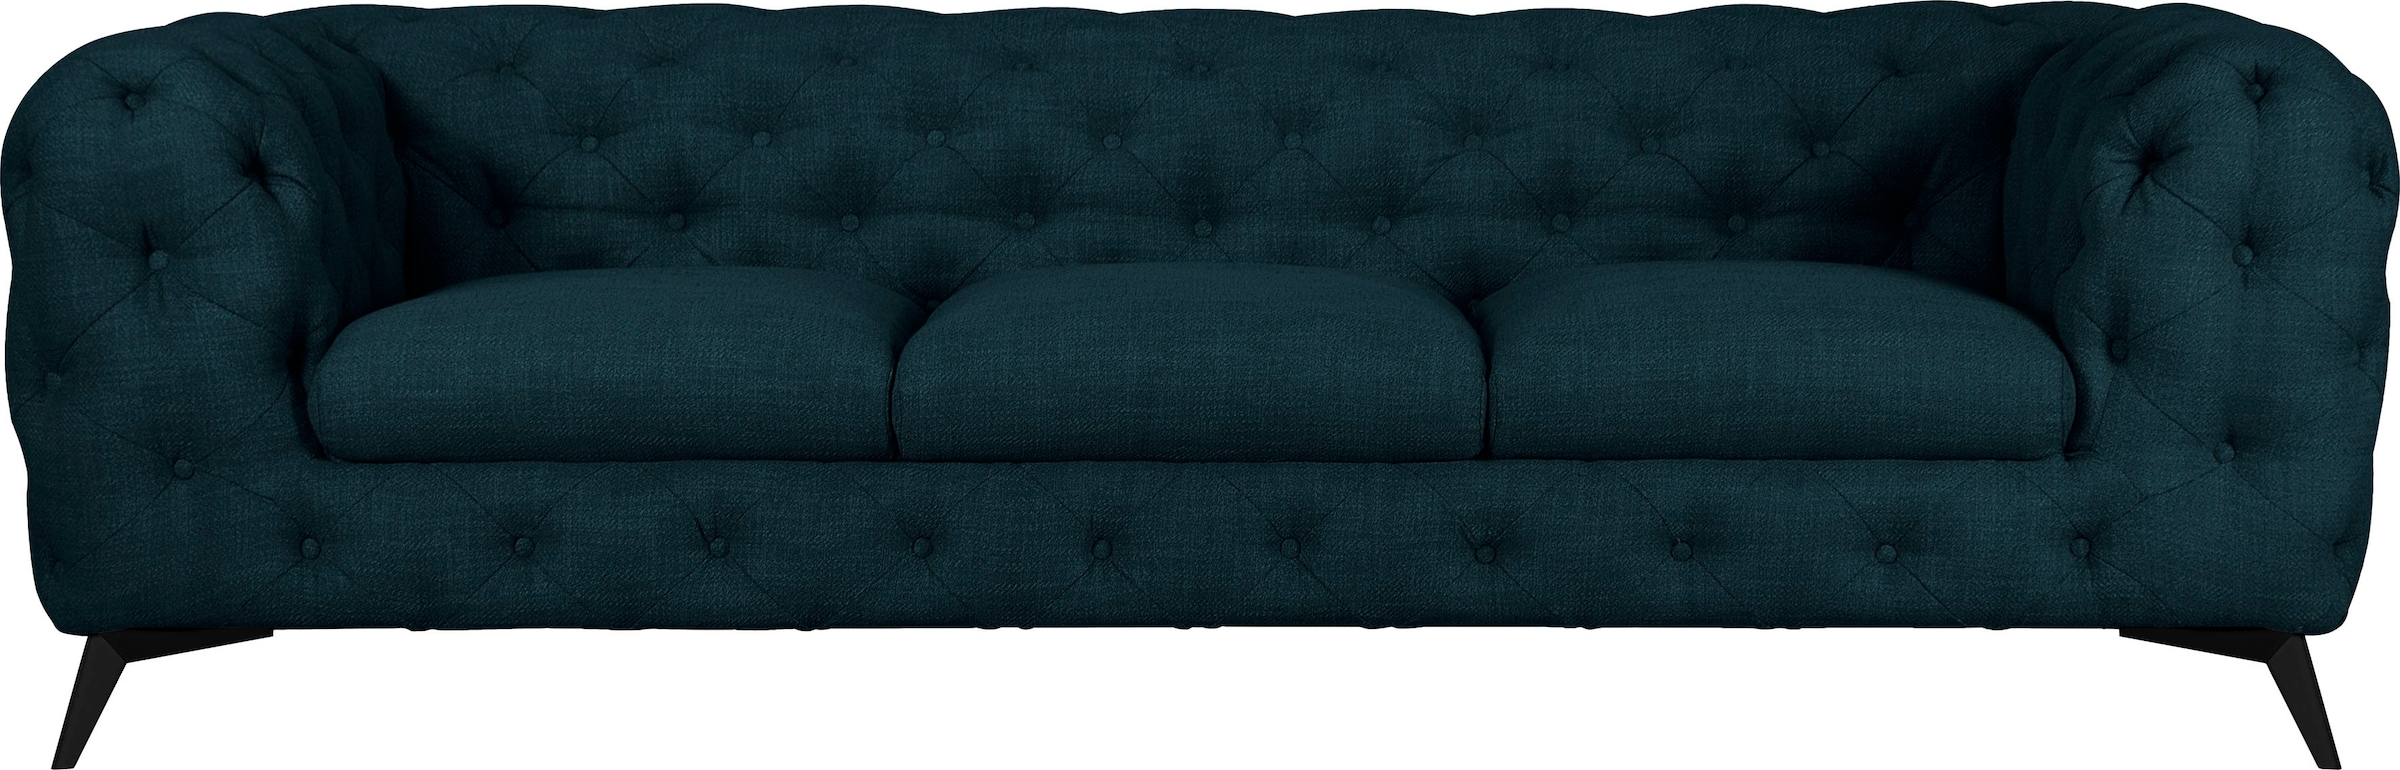 Leonique Chesterfield-Sofa »Glynis«, aufwändige Knopfheftung, moderne Chesterfield Optik, Fussfarbe wählbar